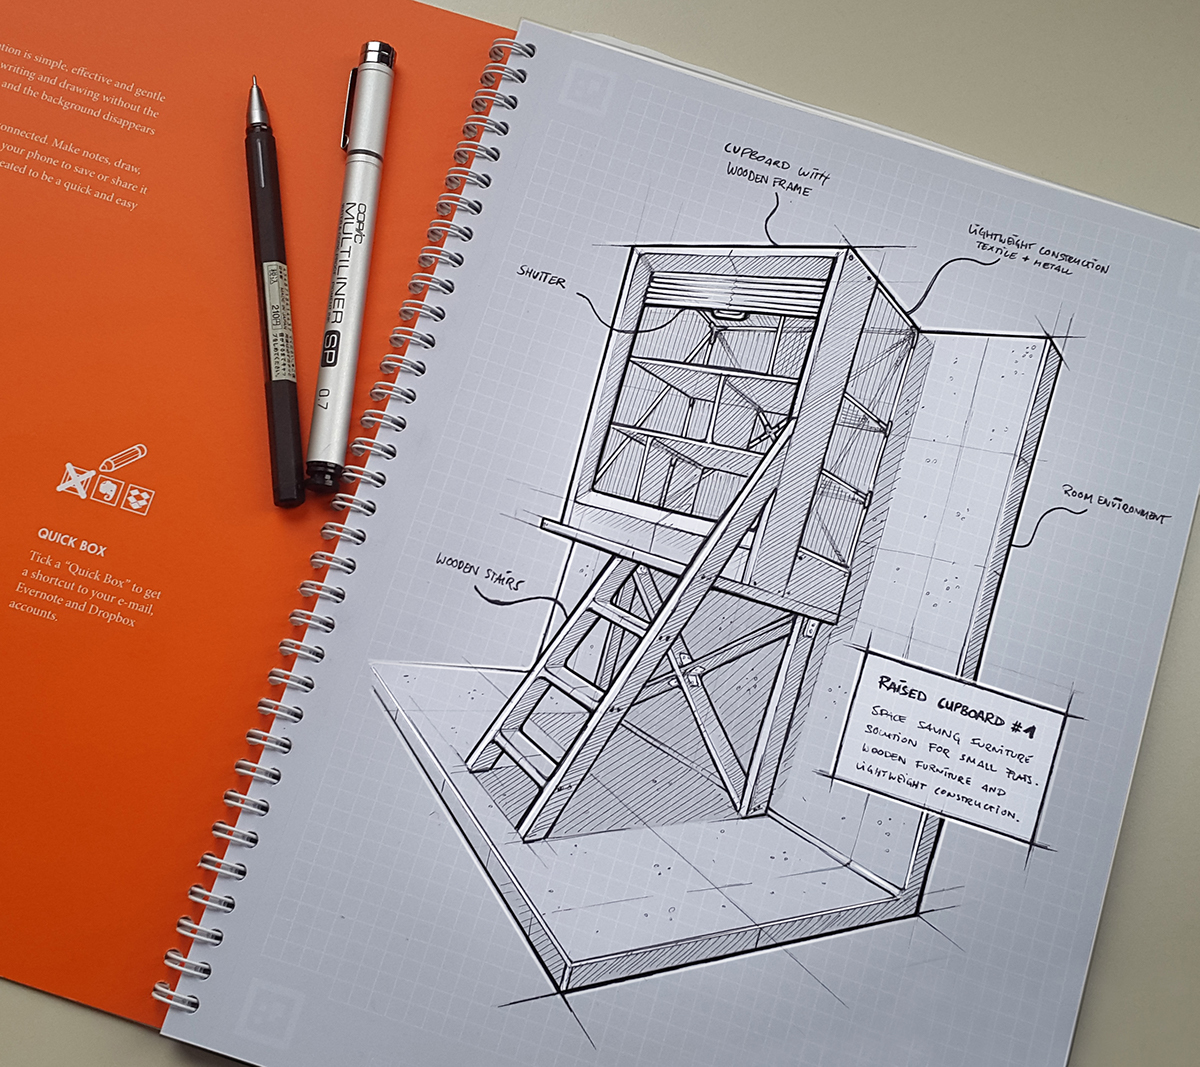 productdesign ILLUSTRATION  sketching industrialdesign designsketching idsketch doodles scribble sketch Produktdesign